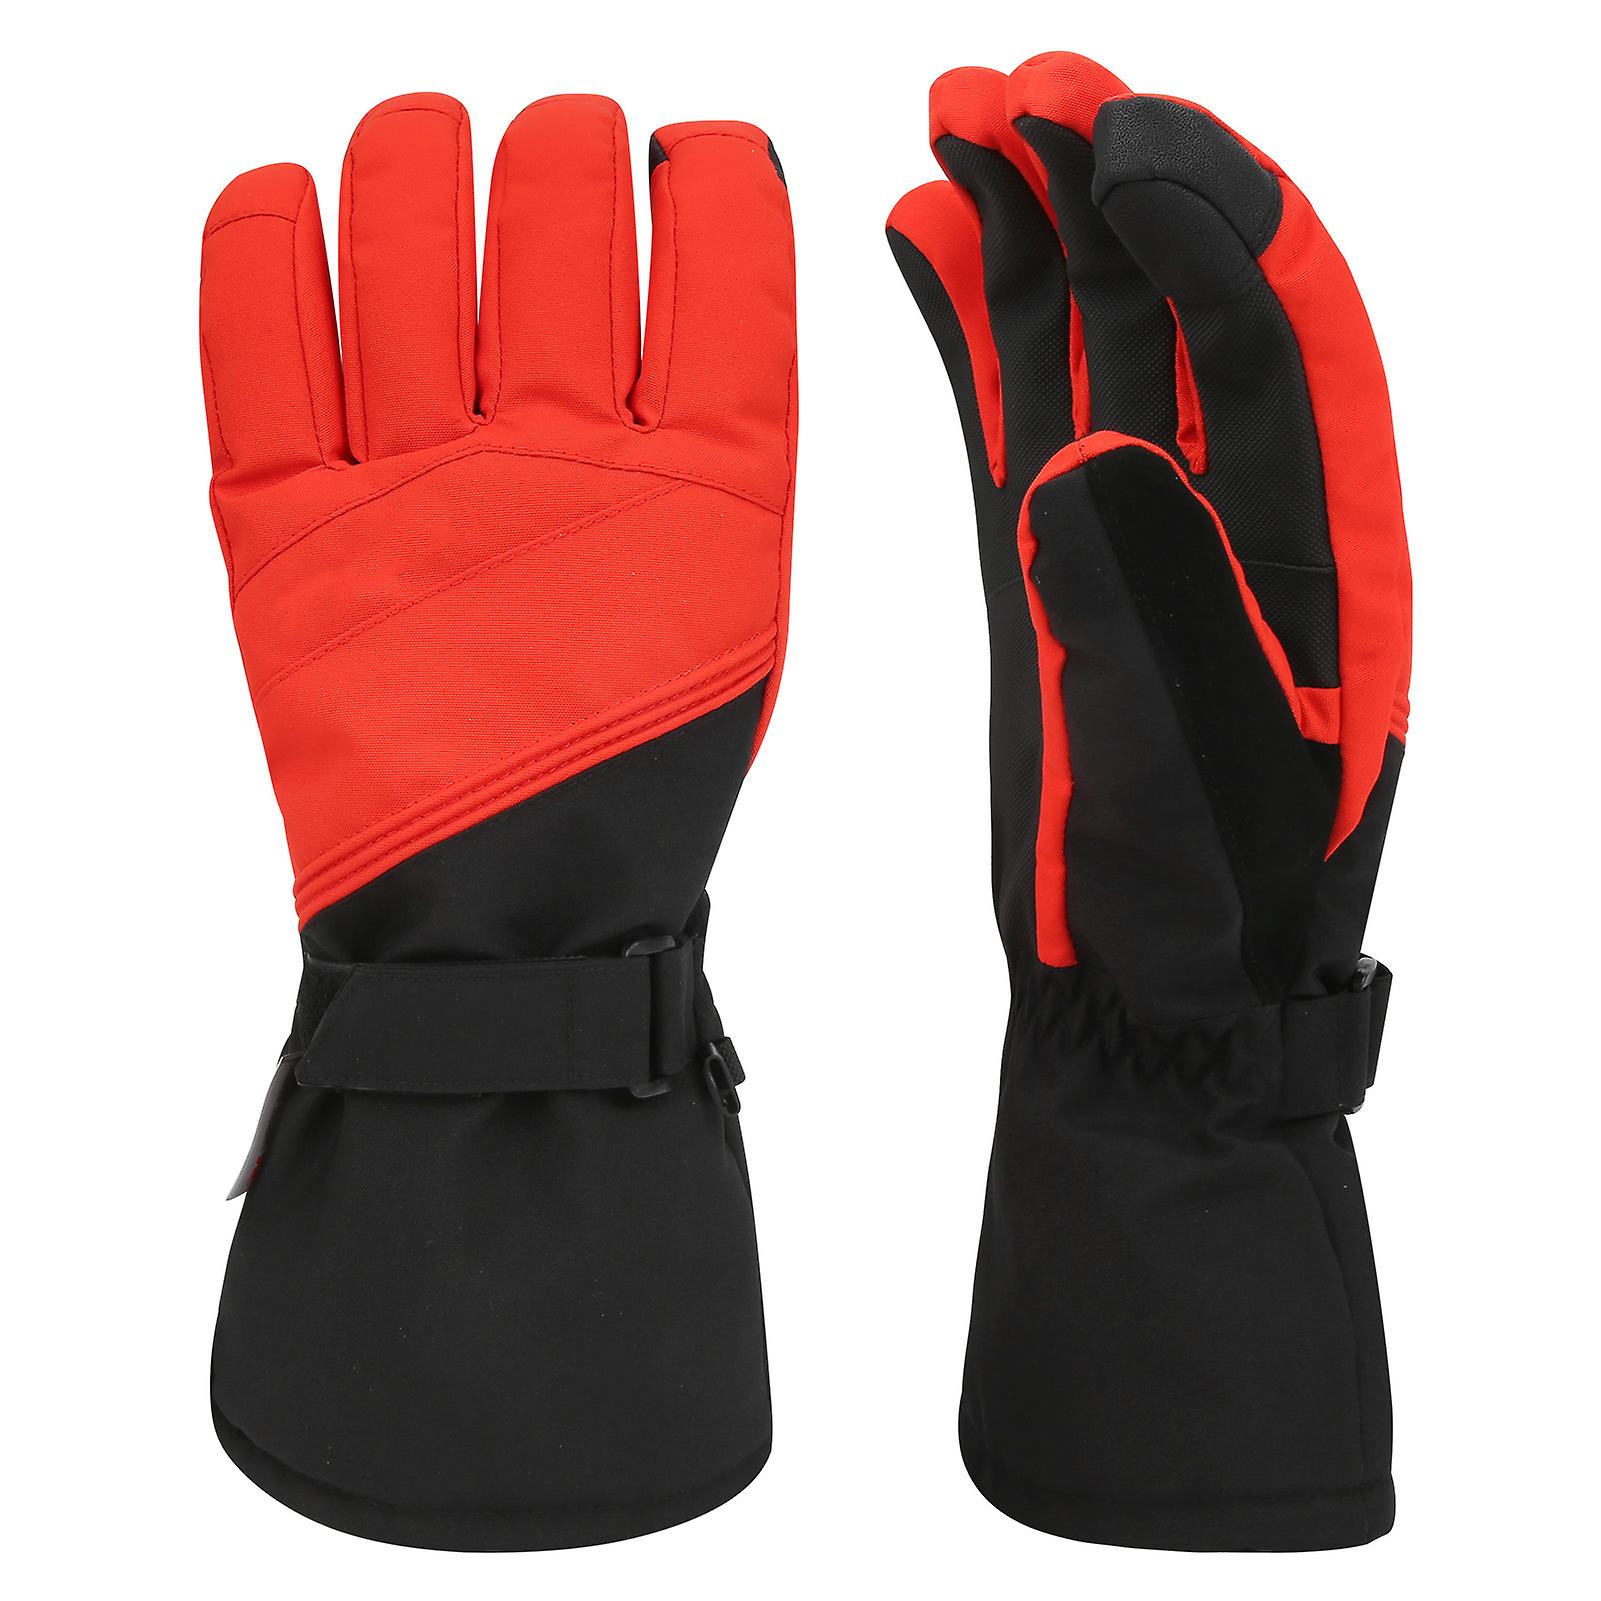 1pair Winter Outdoor Sport Skiing Brushed Lining Waterproof Keep Warm Antislip Glovesl Red Black